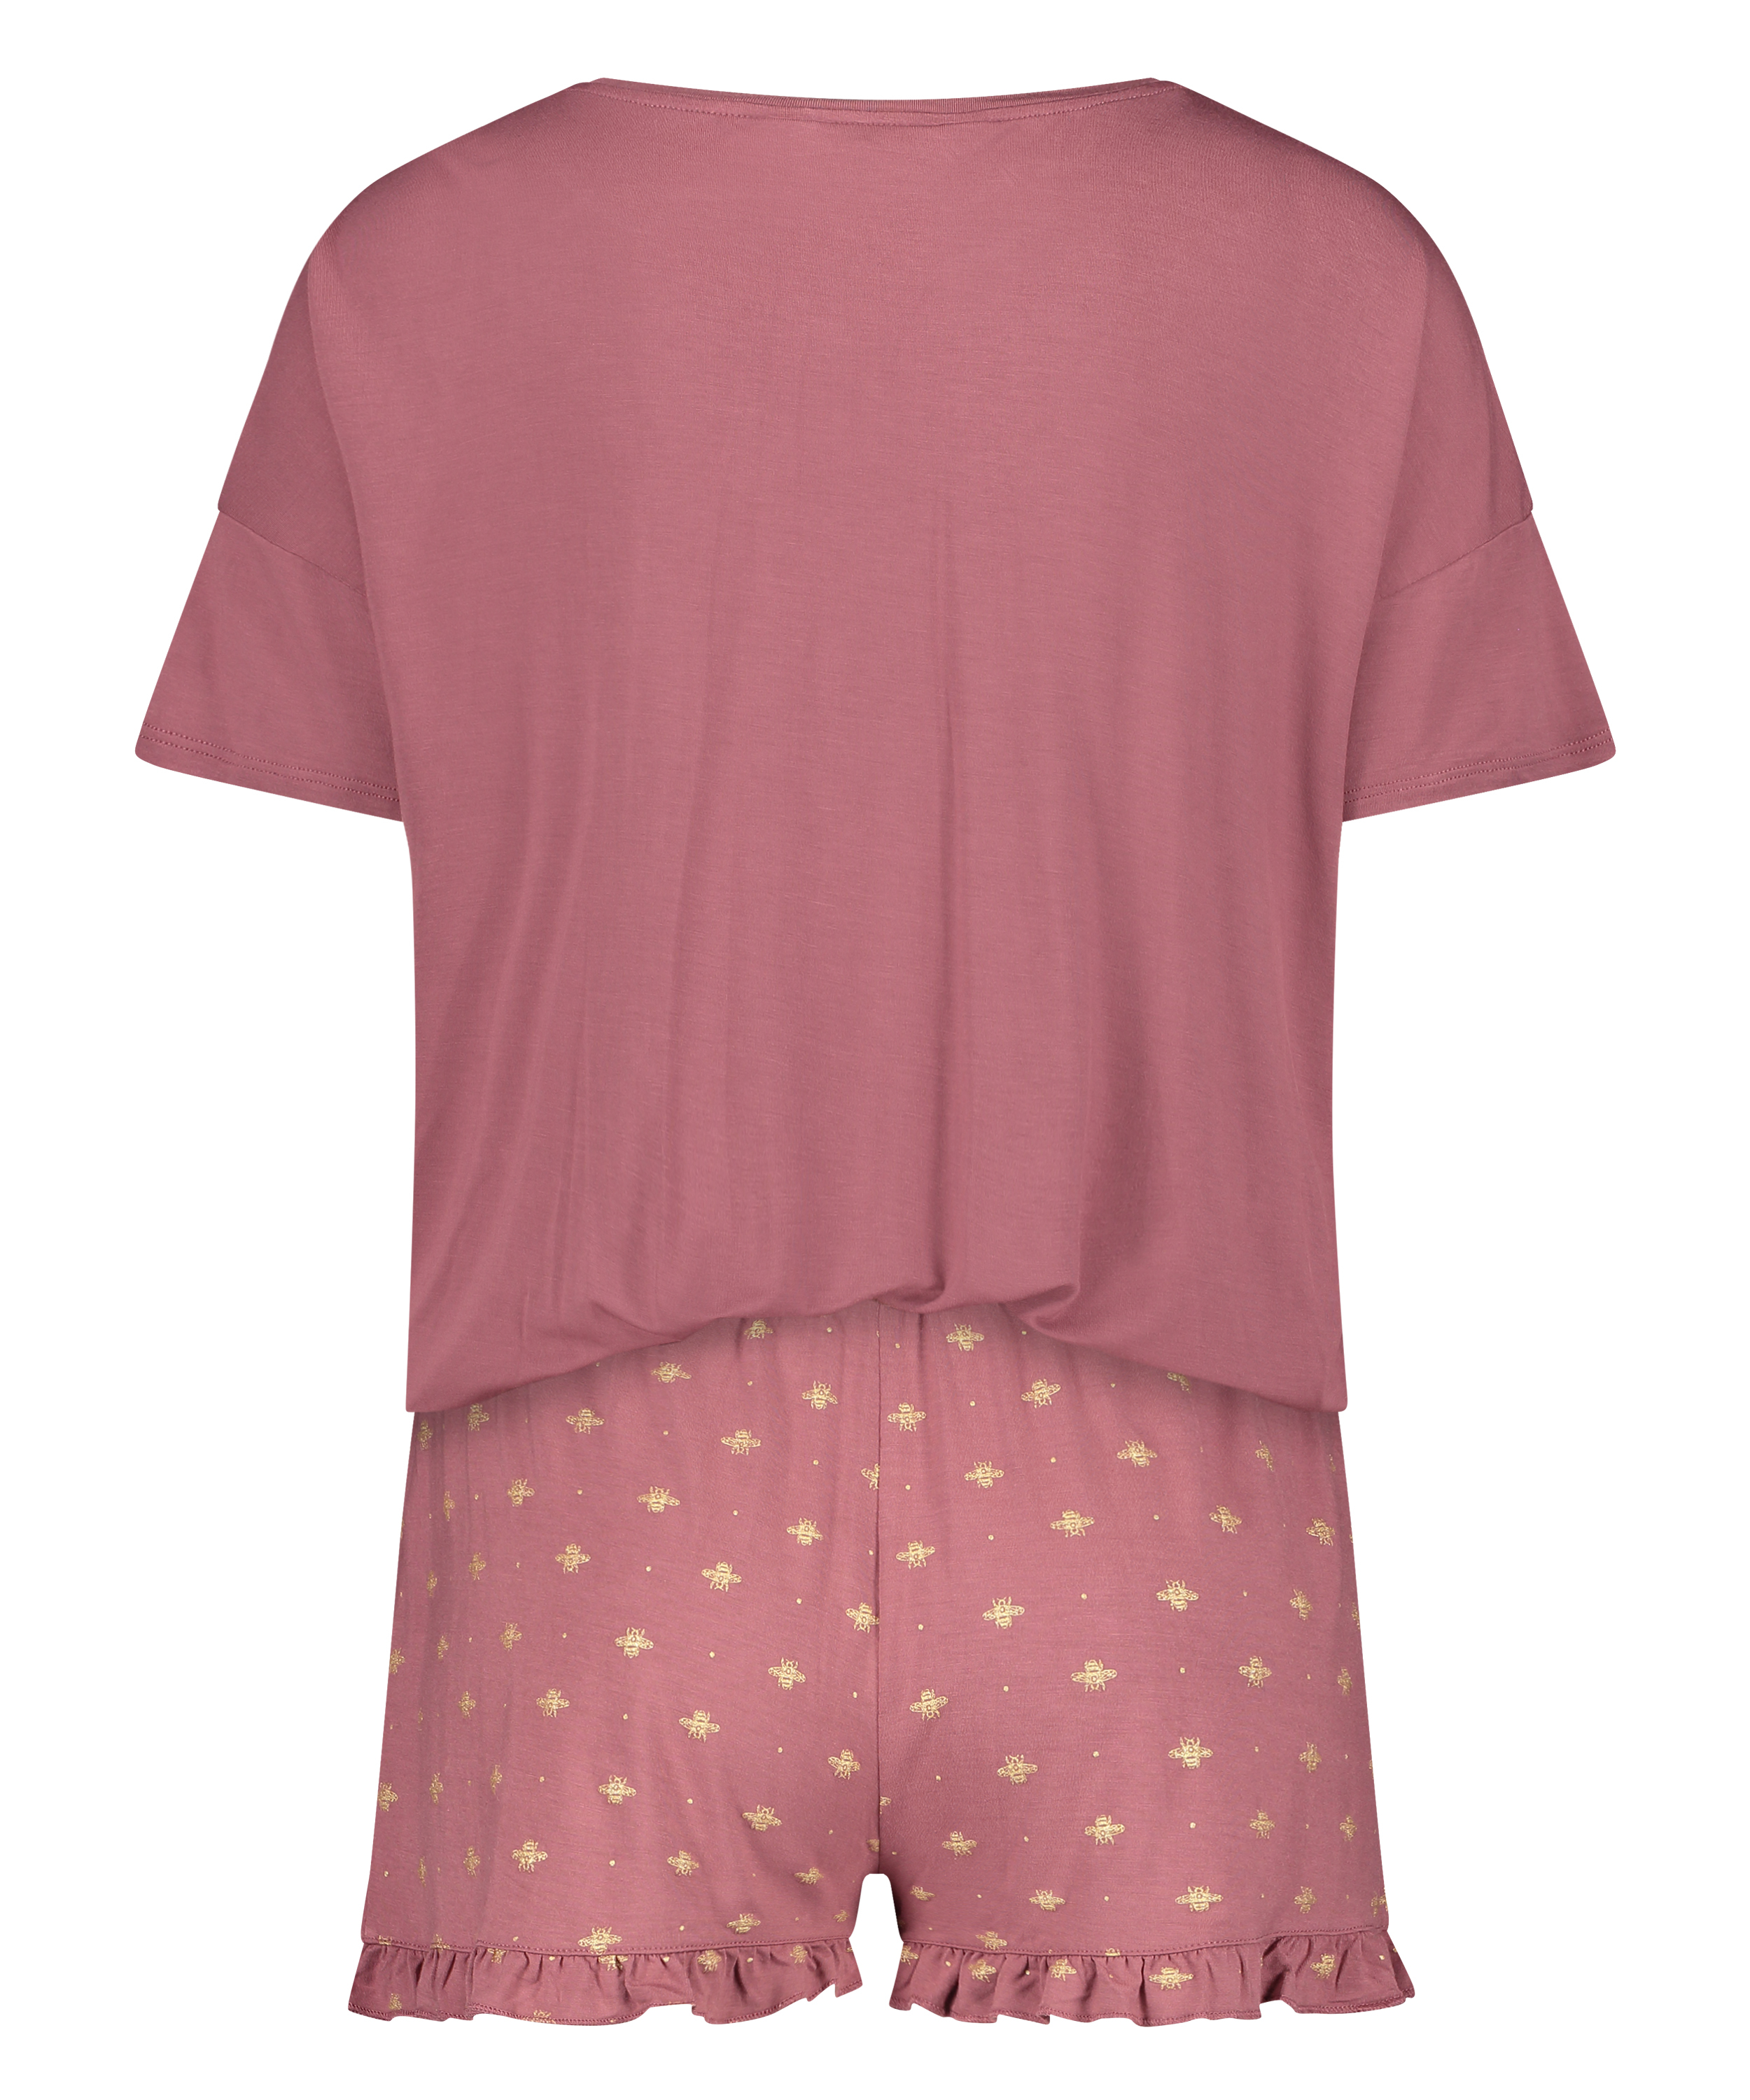 Short Pyjama Set, Pink, main